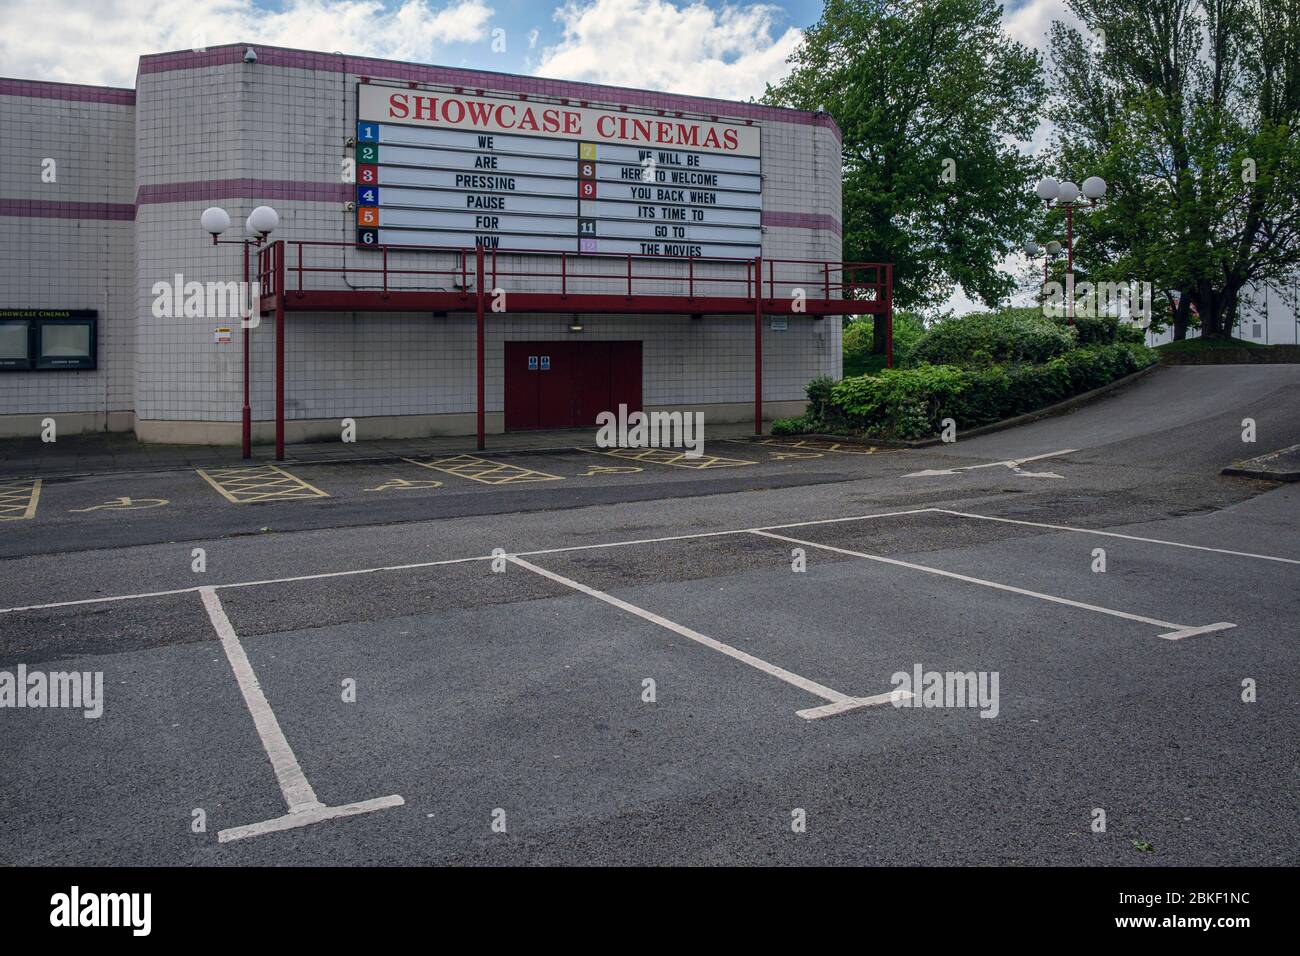 Botschaft über ein Kino, das während der Sperrung der Coronavirus-Pandemie geschlossen wurde, Derby, England, Mai 2020 Stockfoto